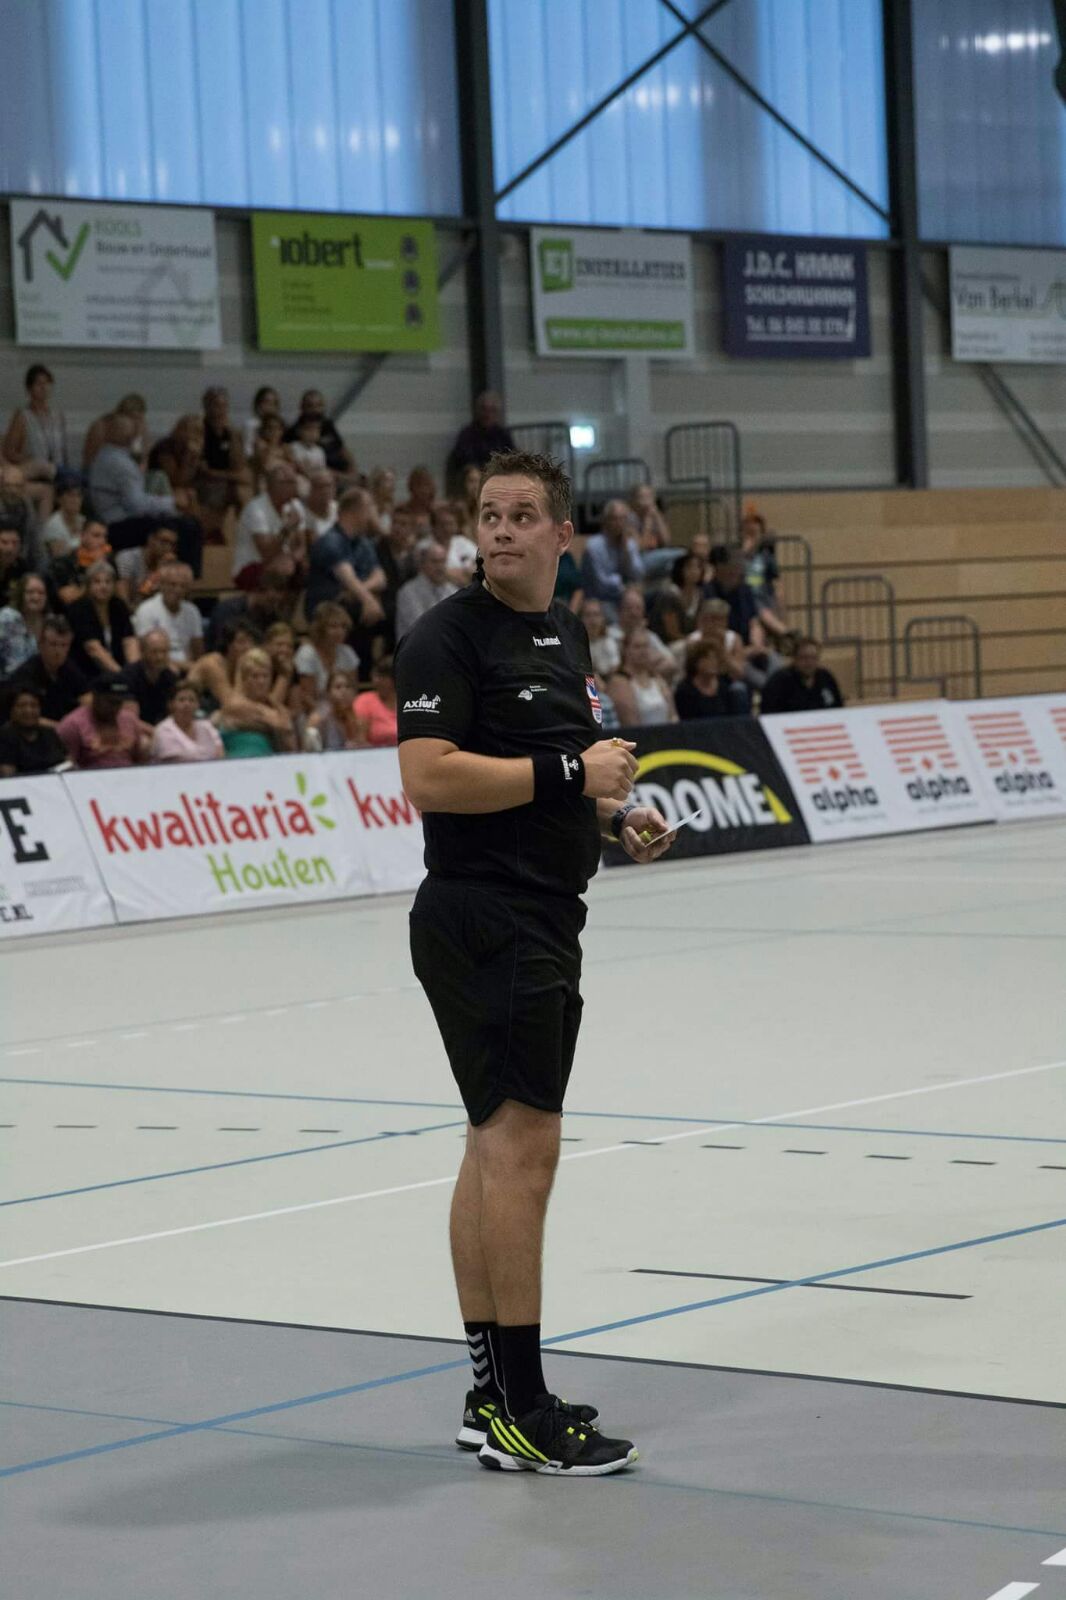 /wireless-communication-system-handball-referee-axiwi